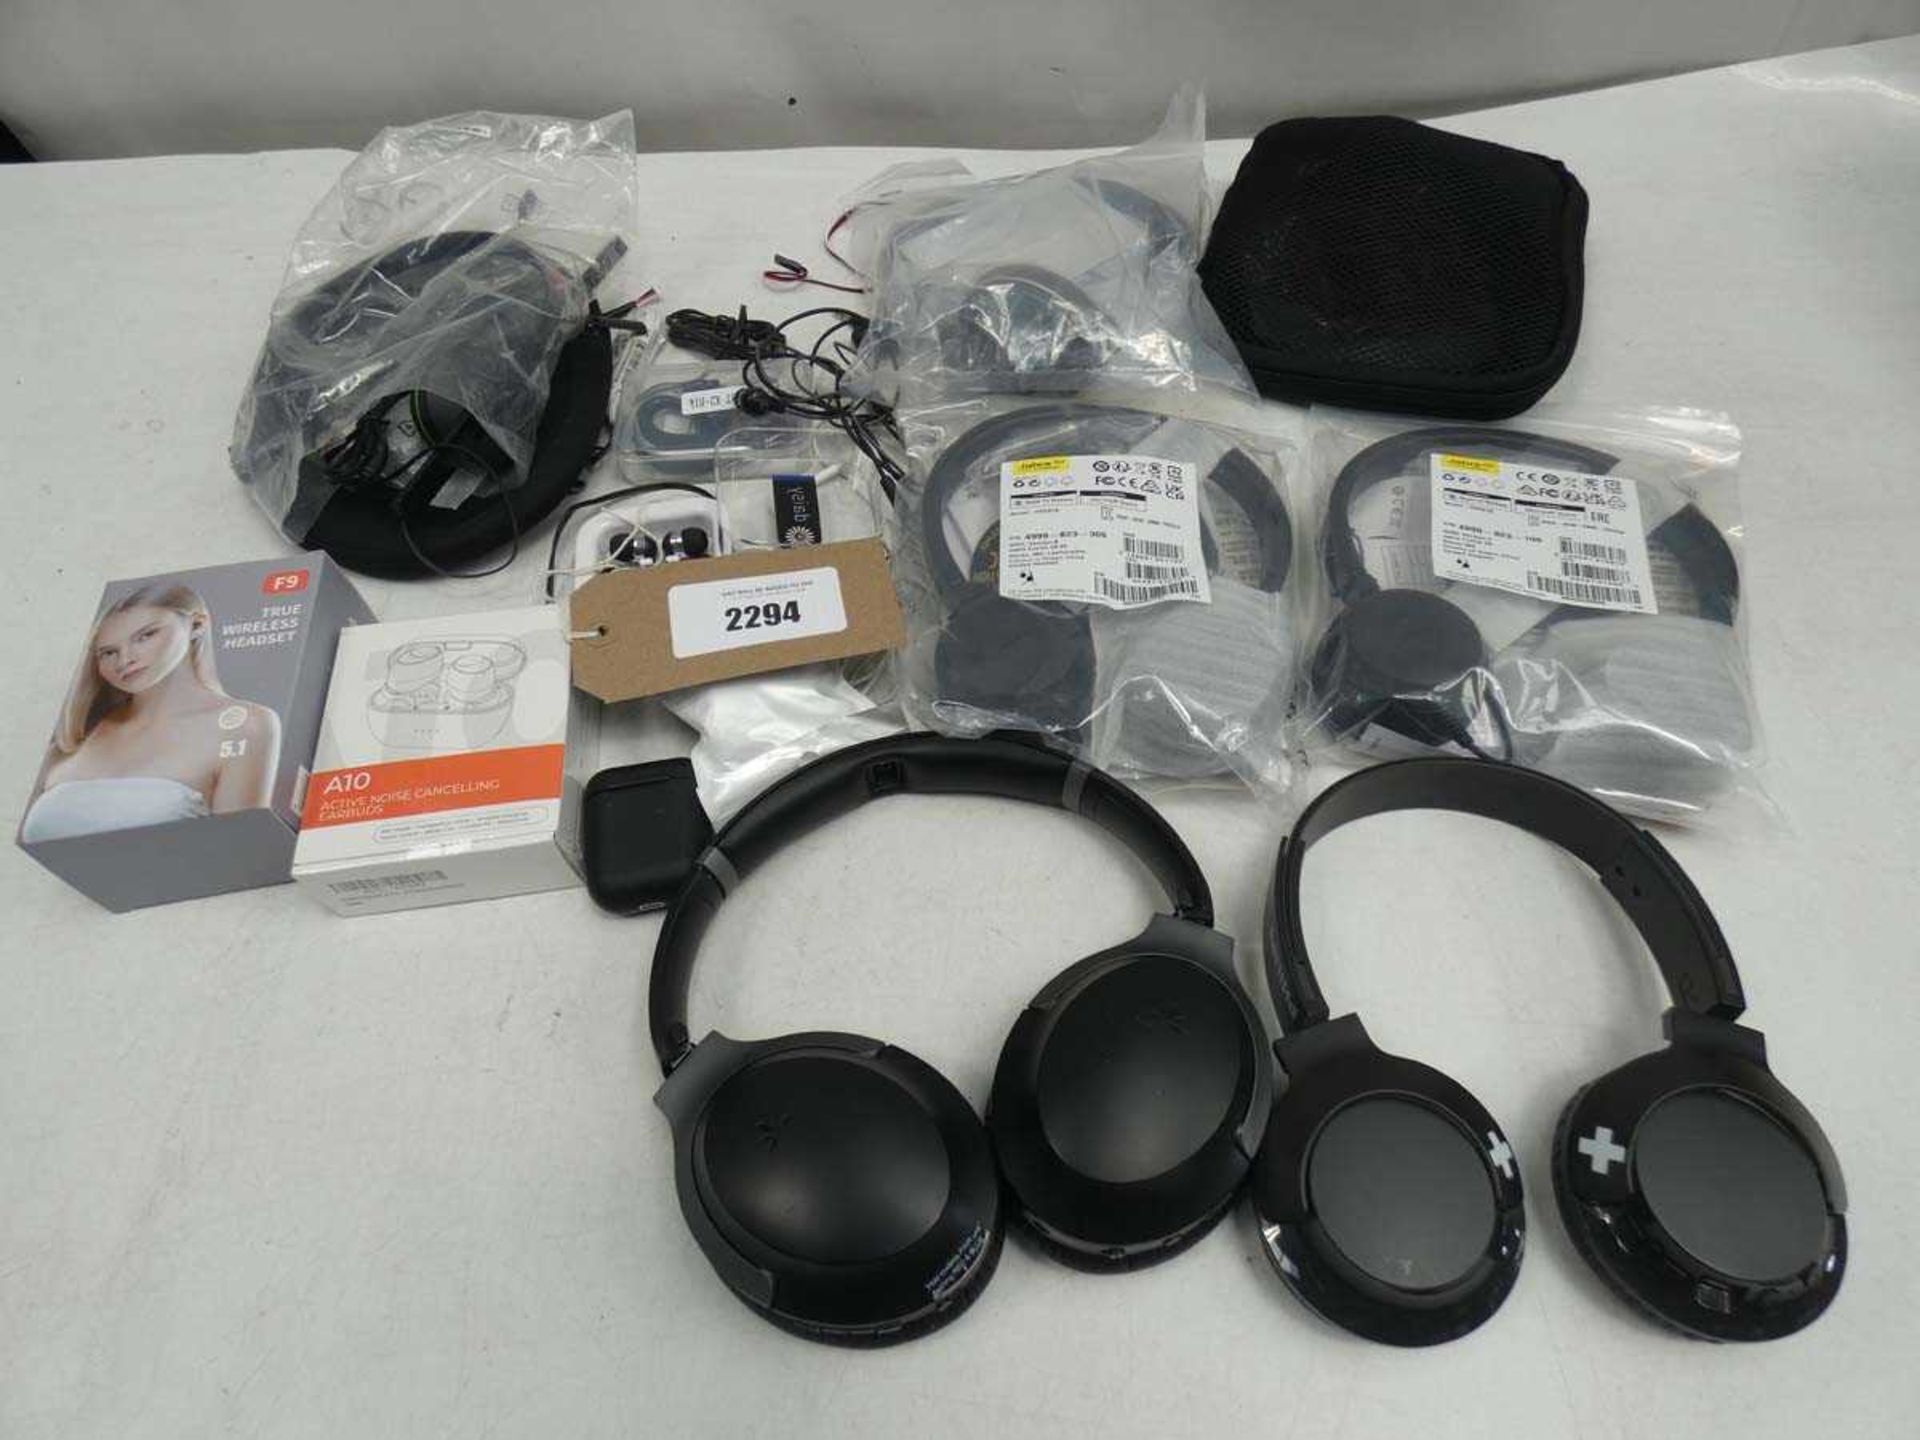 +VAT Bag containing wireless earphones, headsets and earphones